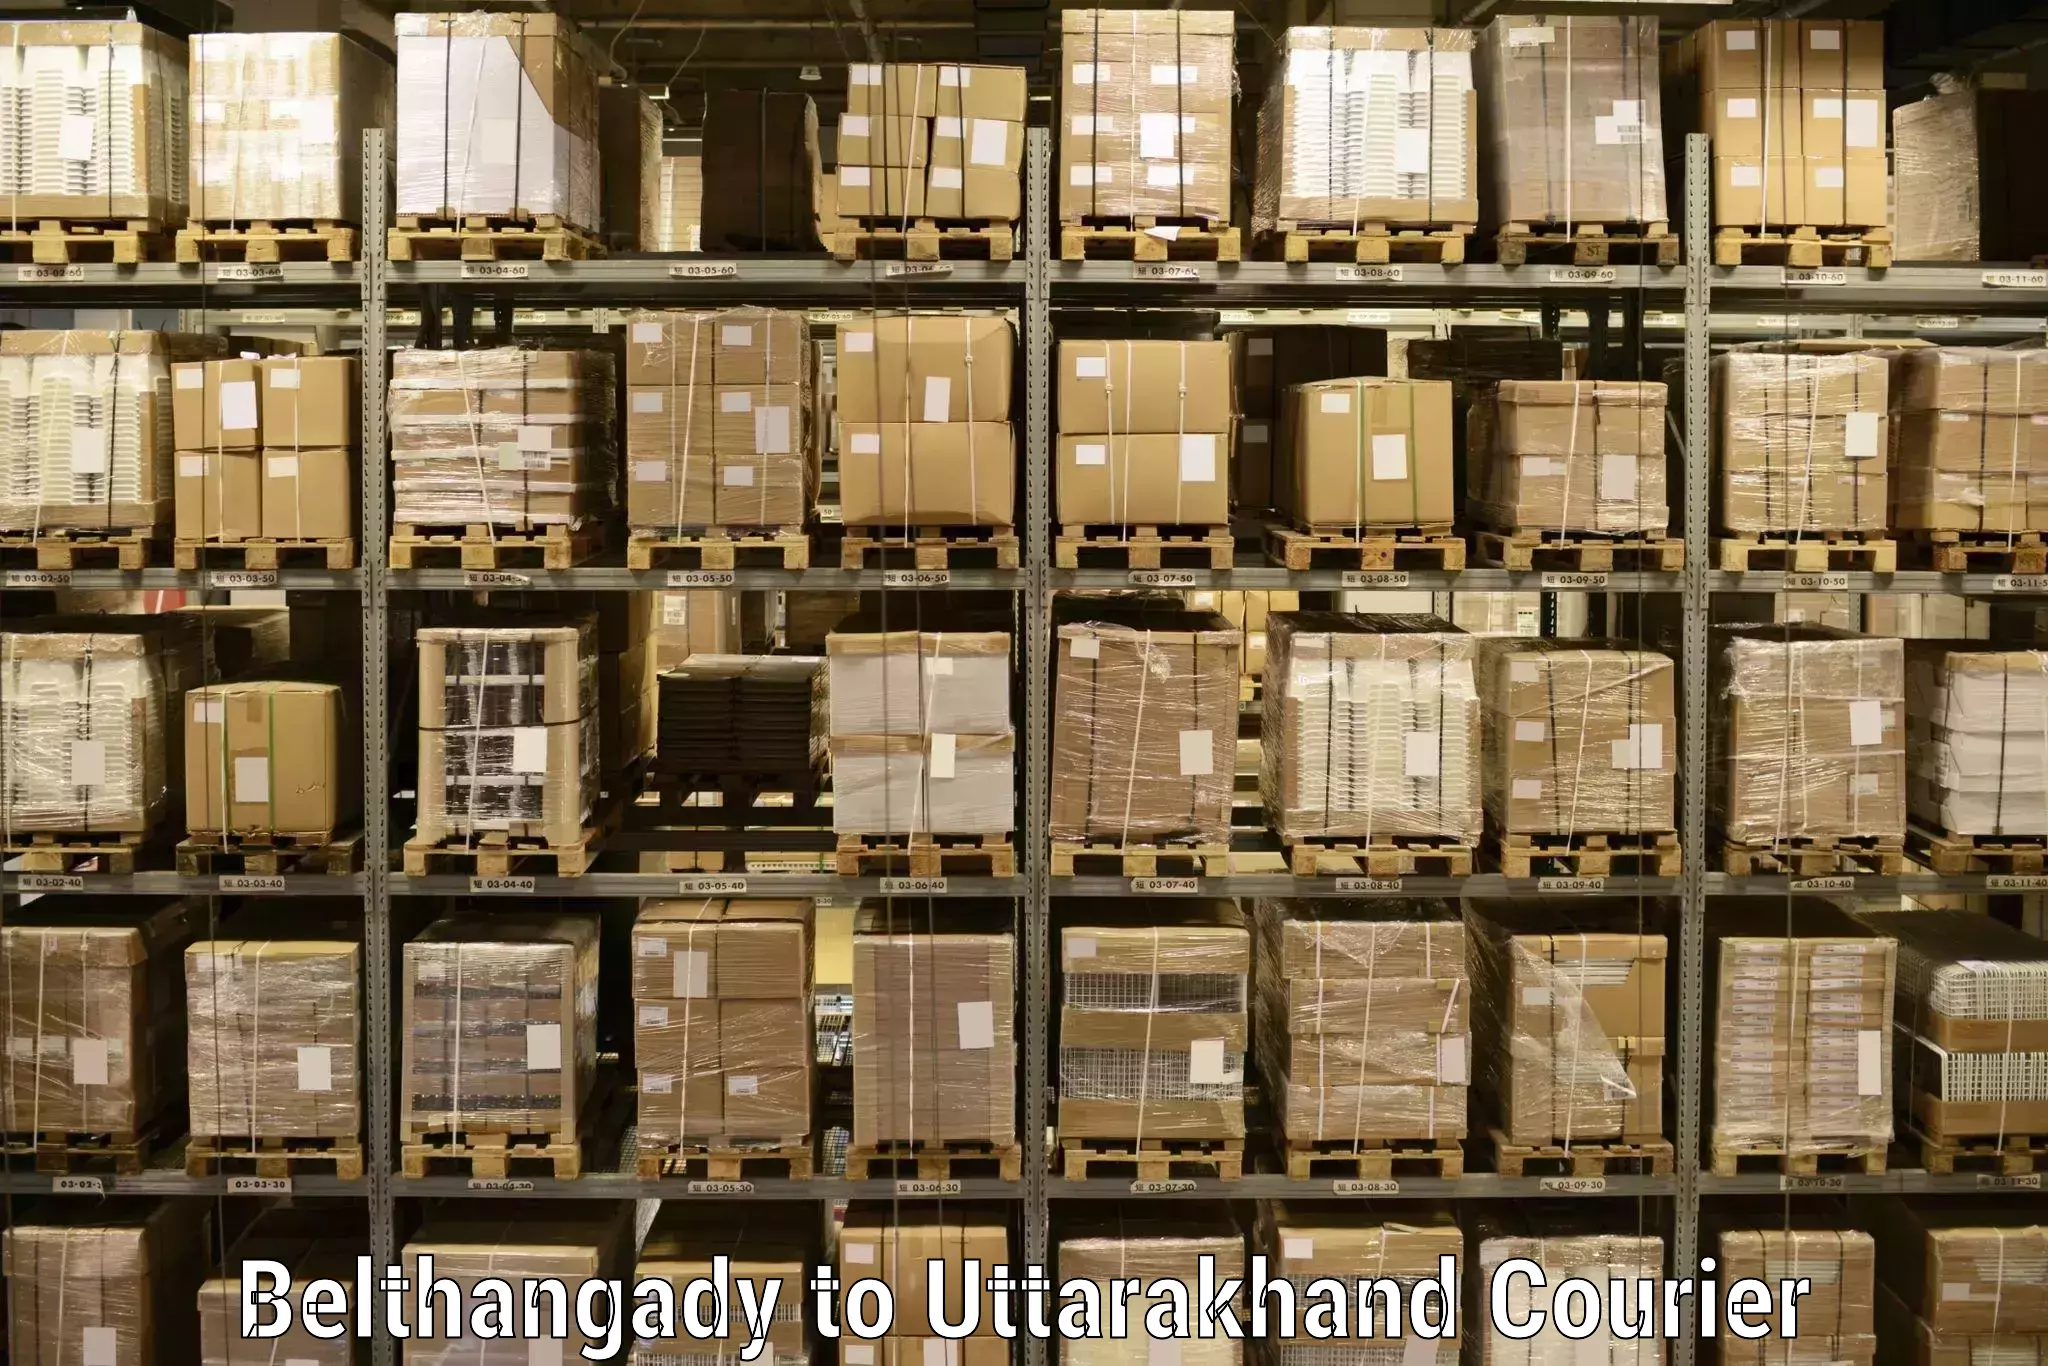 Bulk order courier Belthangady to Uttarakhand